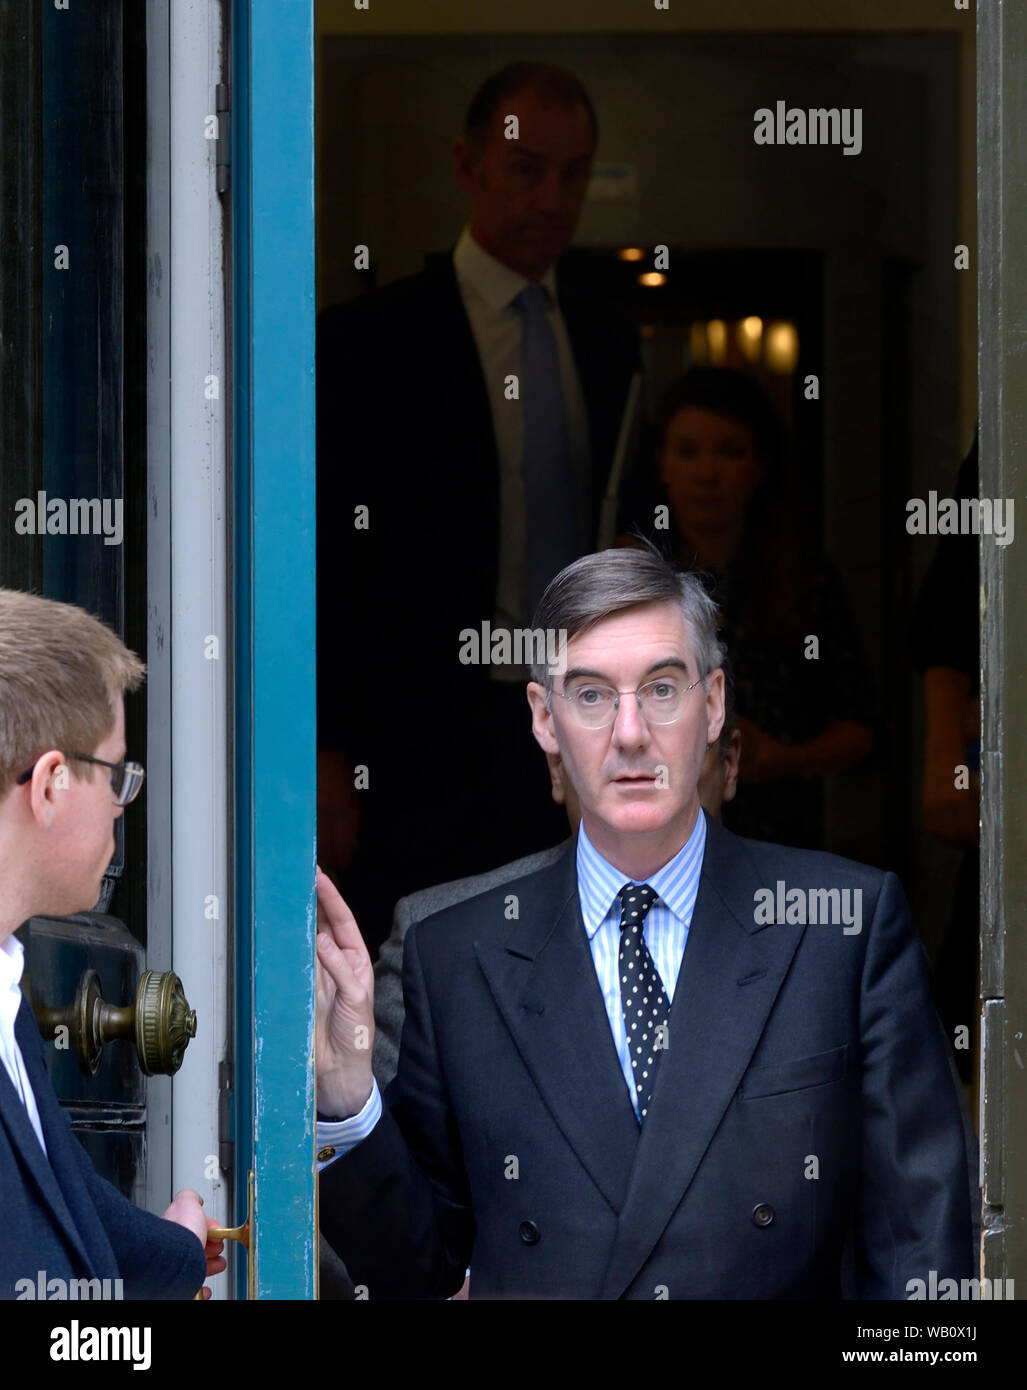 Jacob Rees-Mogg MP (Leader de la Chambre des communes) de quitter le bureau du Cabinet, Whitehall, après une séance, 20 août 2019 Banque D'Images